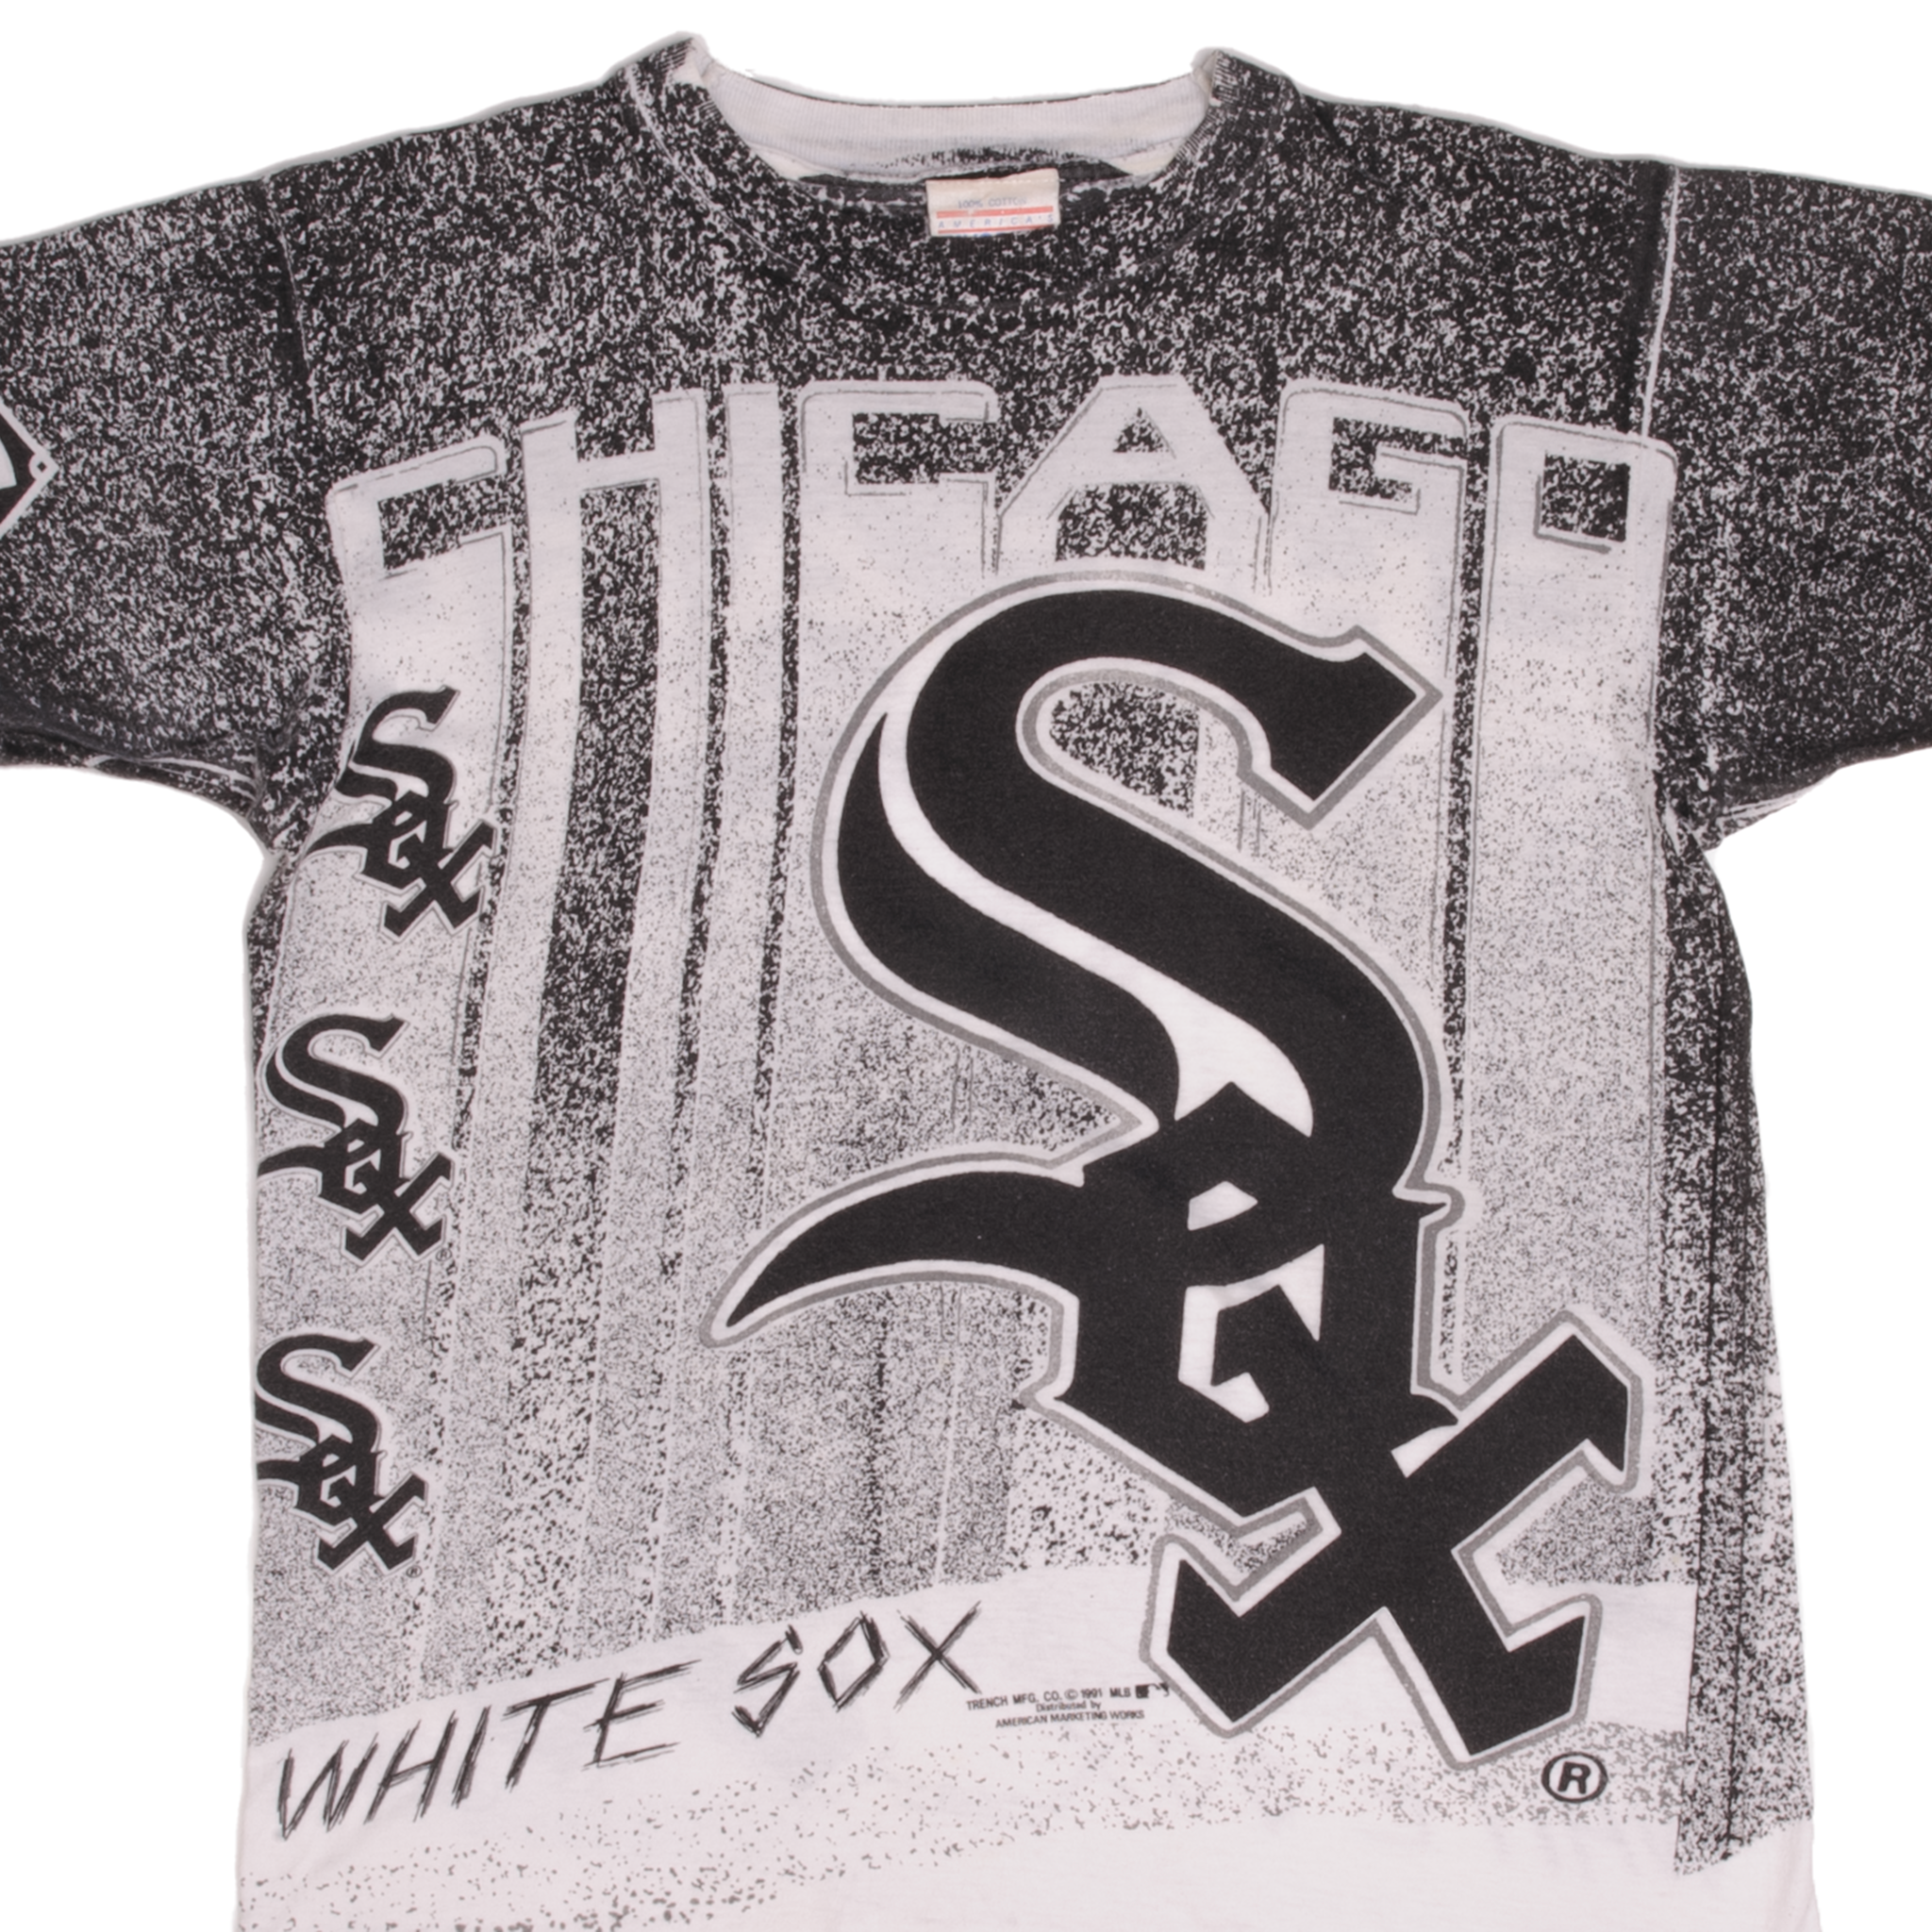 Chicago White Sox T-Shirt, White Sox Shirts, White Sox Baseball